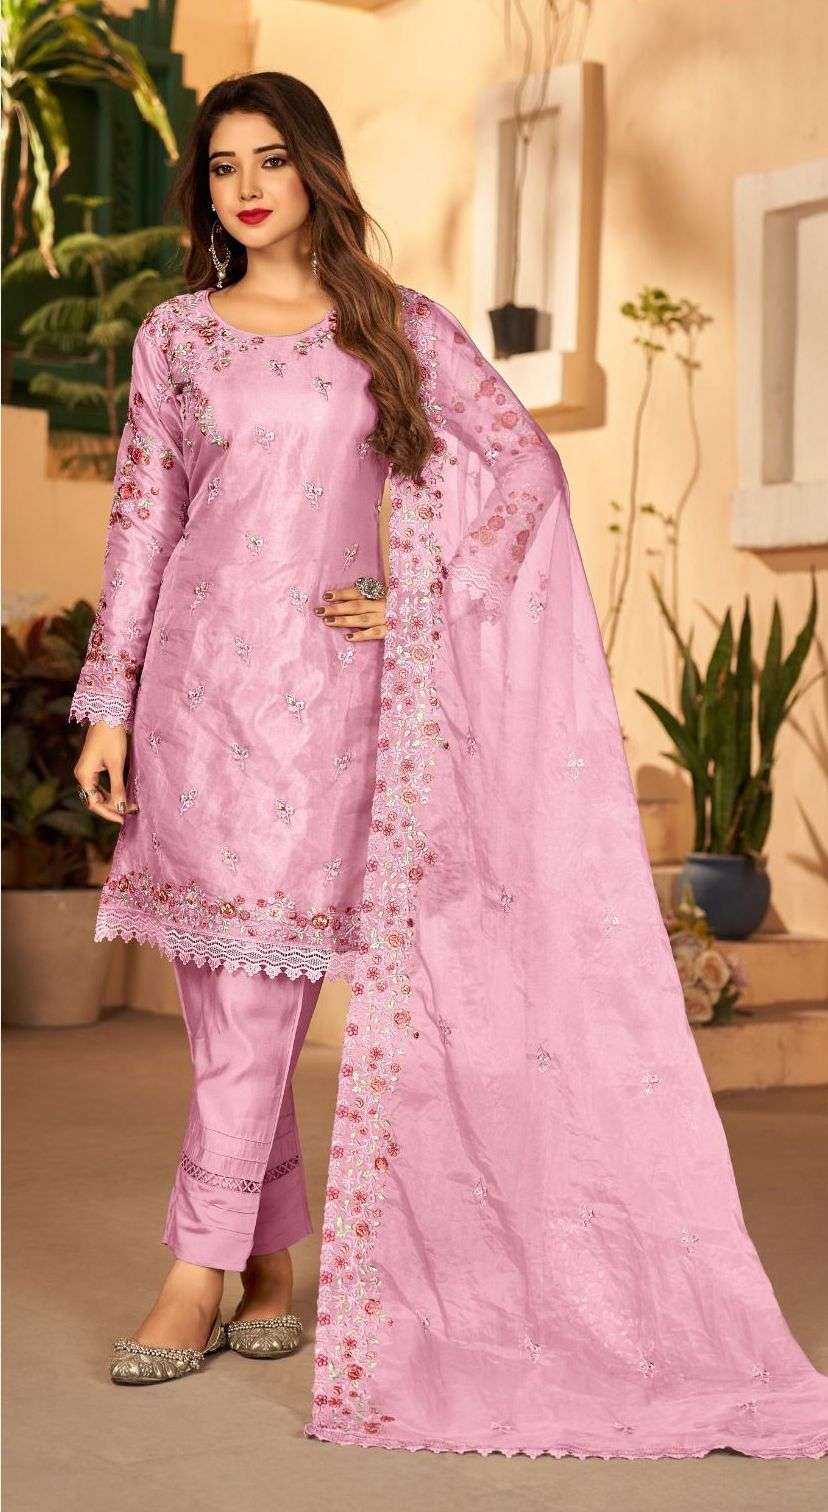 Ladies Suits Manufacturer In Surat | Cotton Suit Wholesale Market | Colours  Creation Surat #suit - YouTube